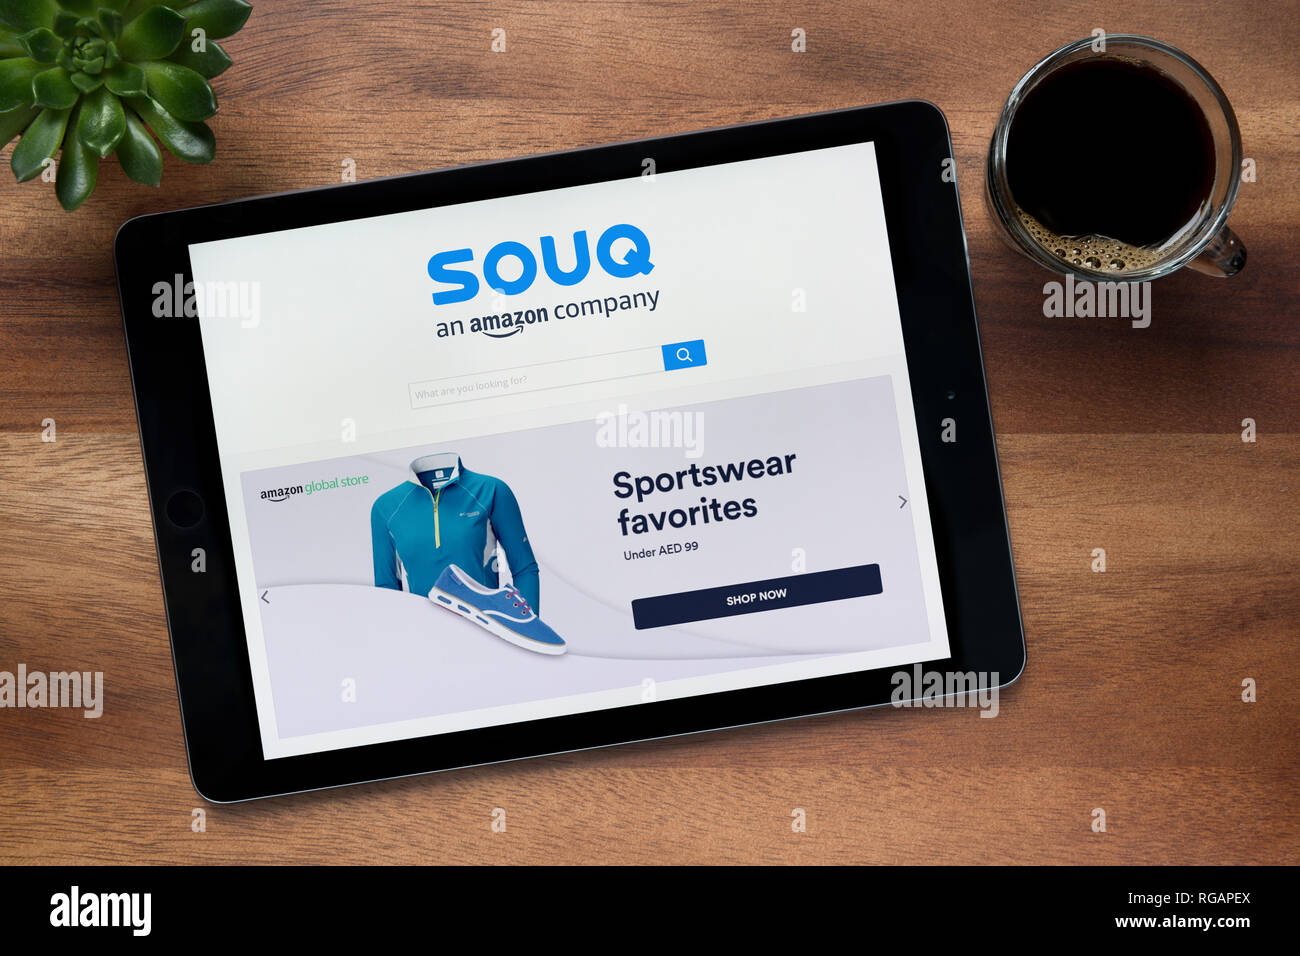 Die Website von Souq.com ist auf einem iPad Tablet gesehen, auf einer hölzernen Tisch zusammen mit einem Espresso und einem Haus Anlage (nur redaktionelle Nutzung). Stockfoto